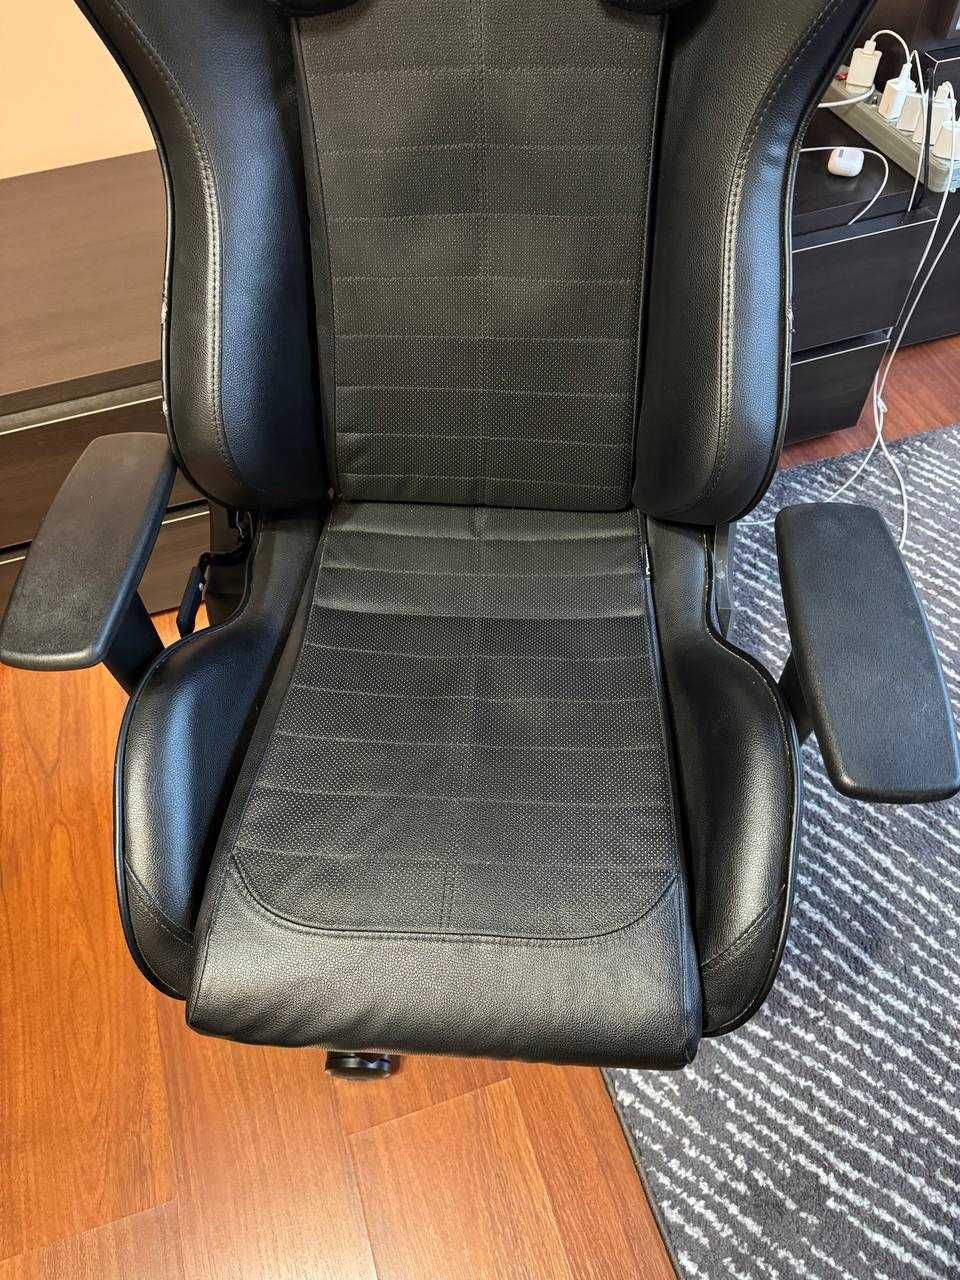 Геймерське крісло DXRacer